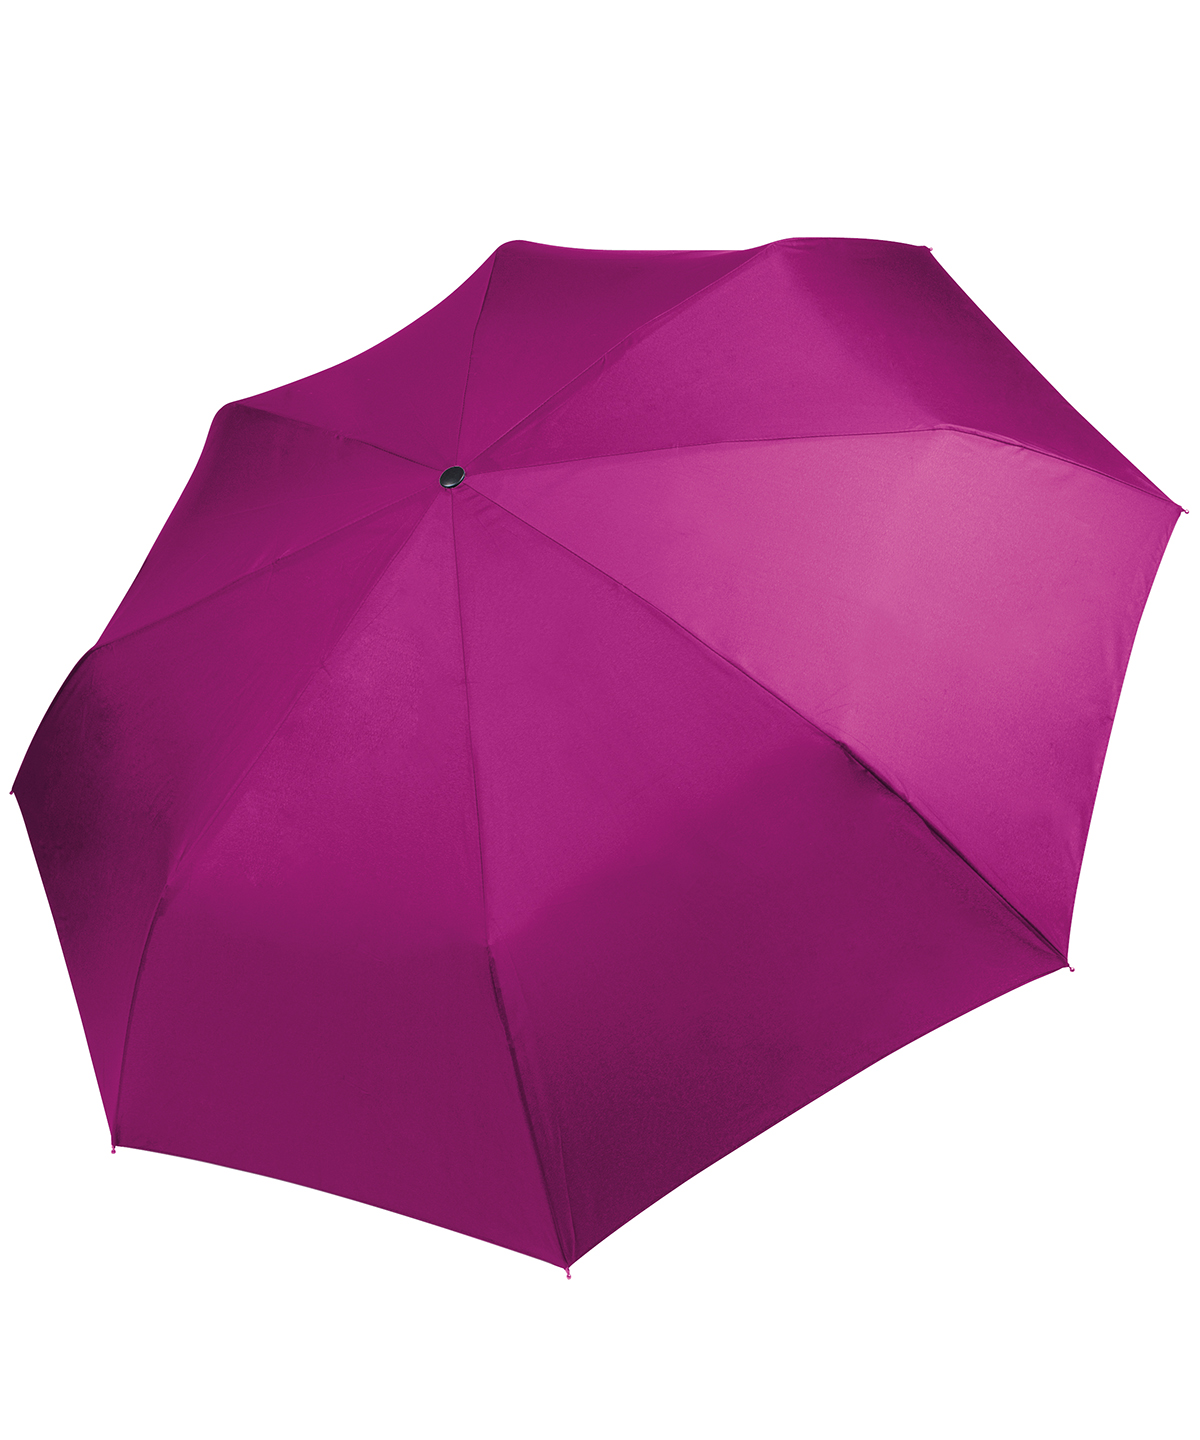 Foldable Mini Umbrella Fuchsia Size One Size